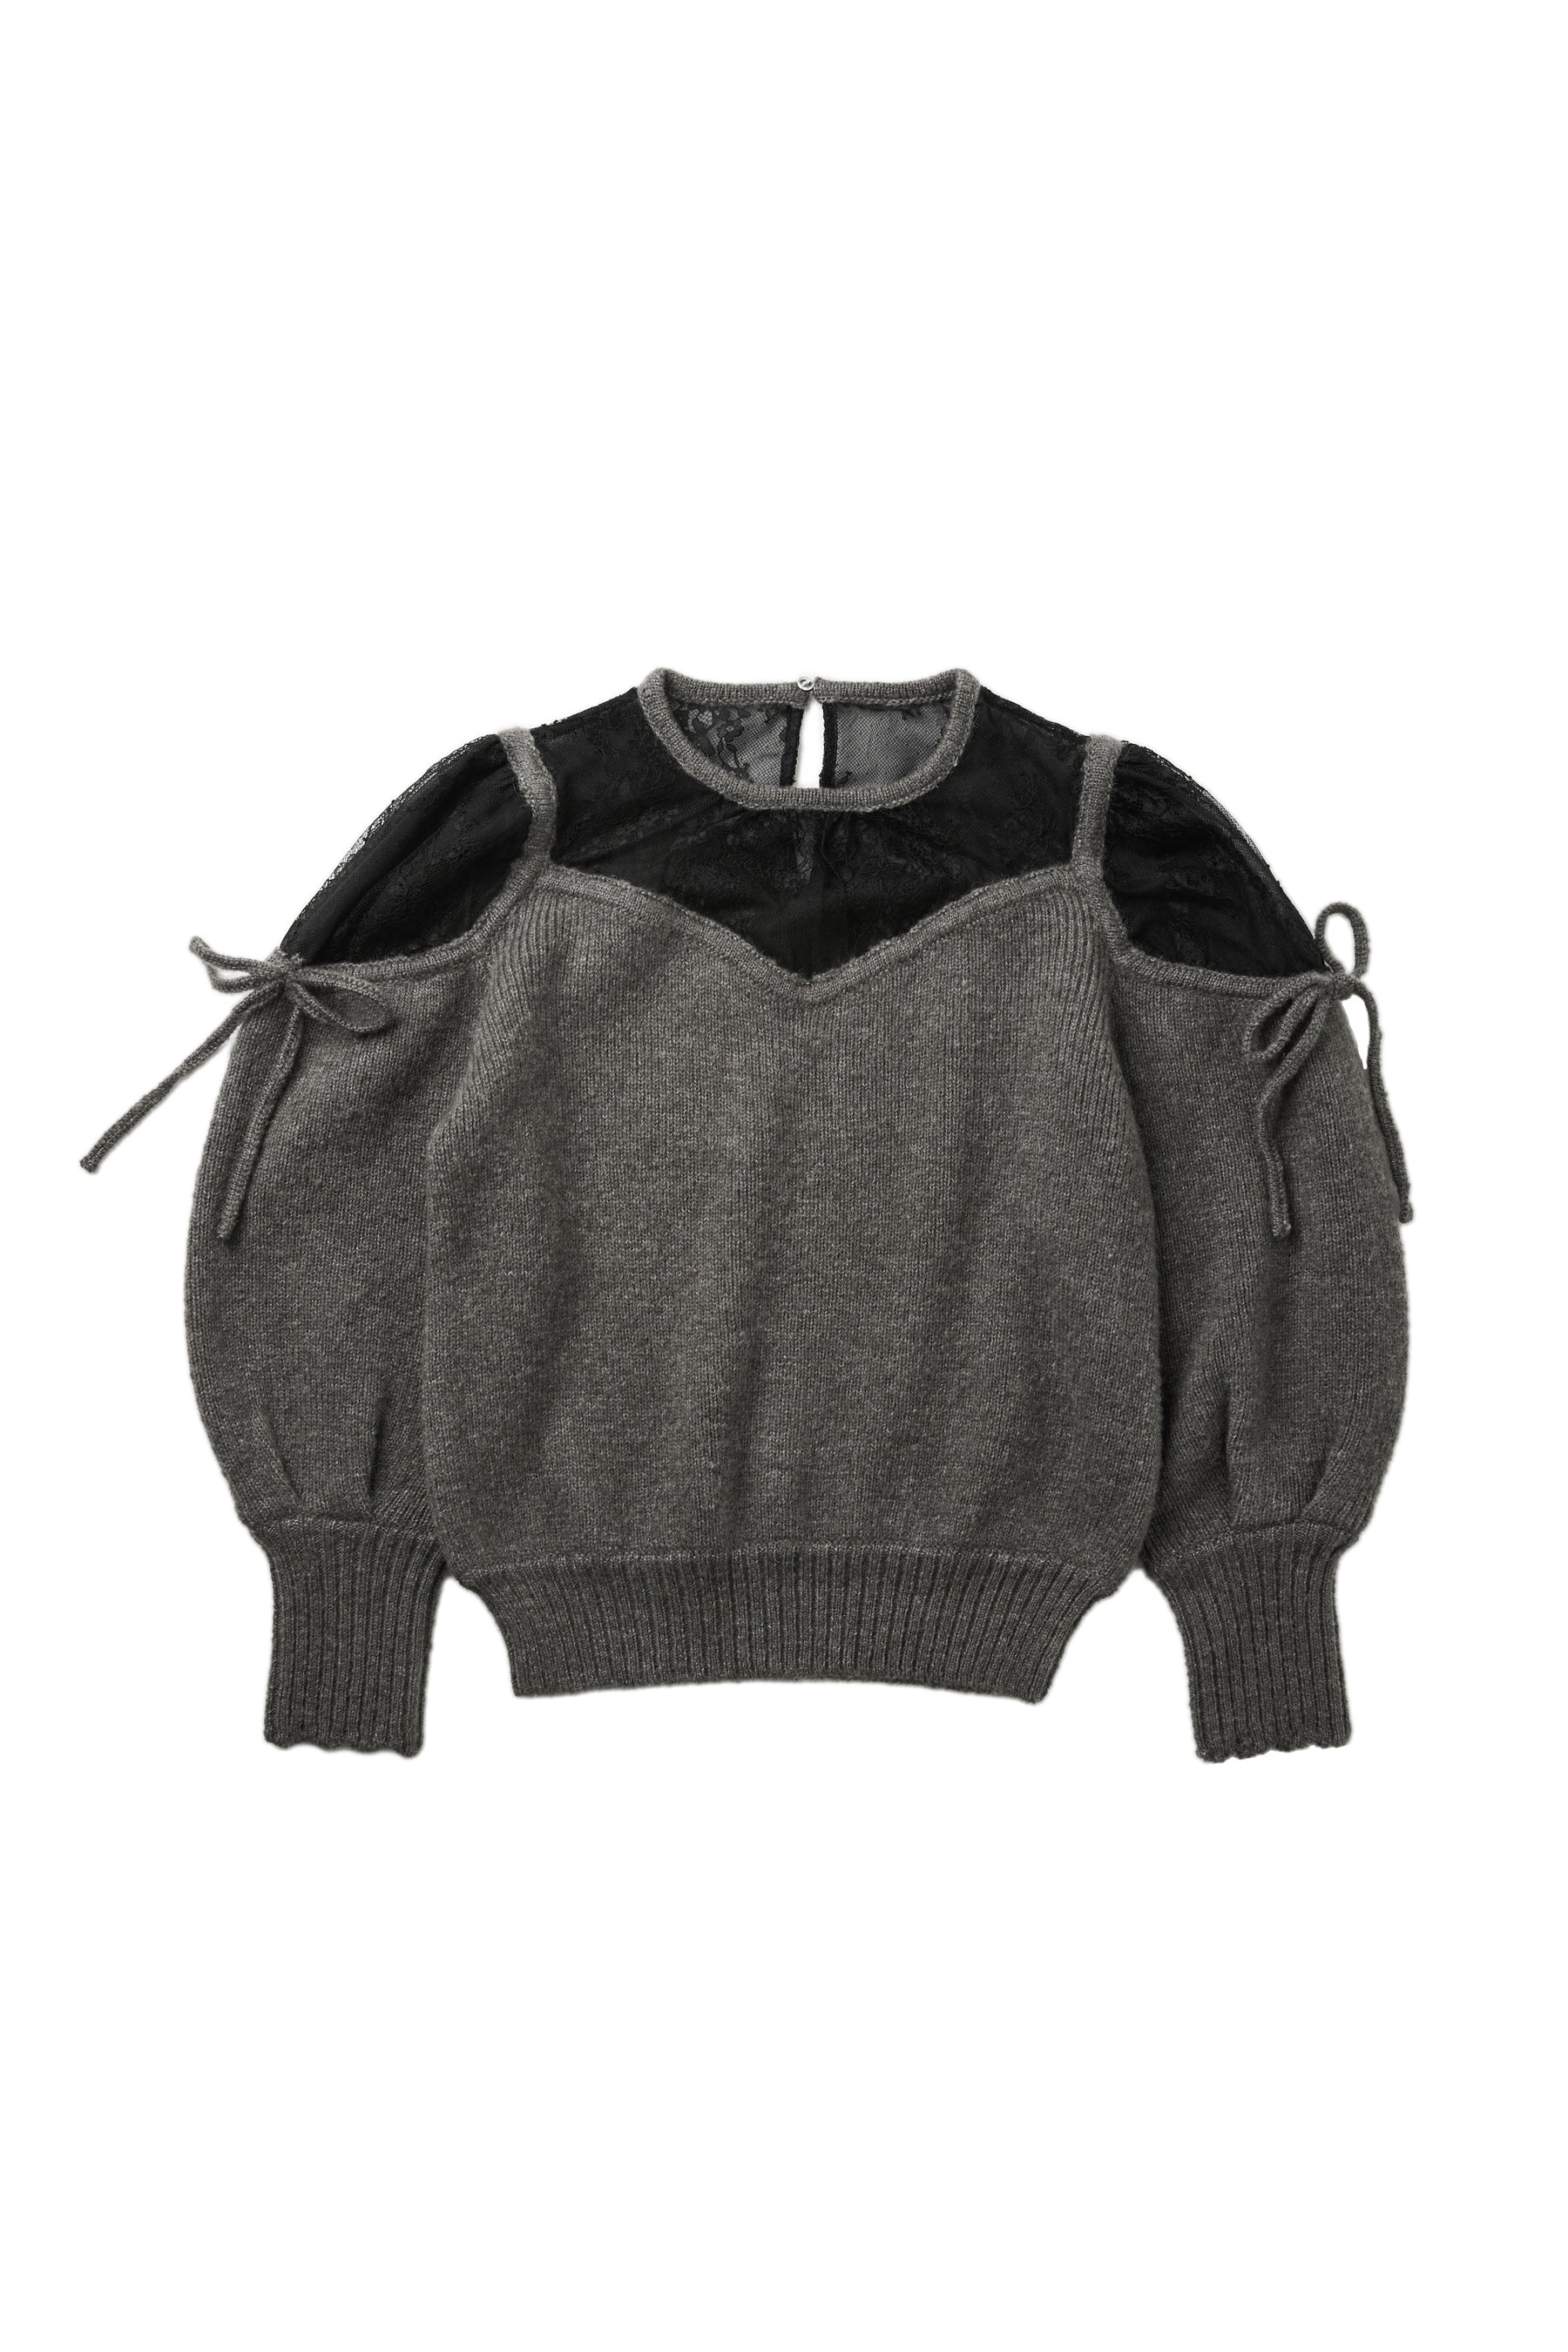 【最終お値下げ】Belleville Lace Knit Pullover